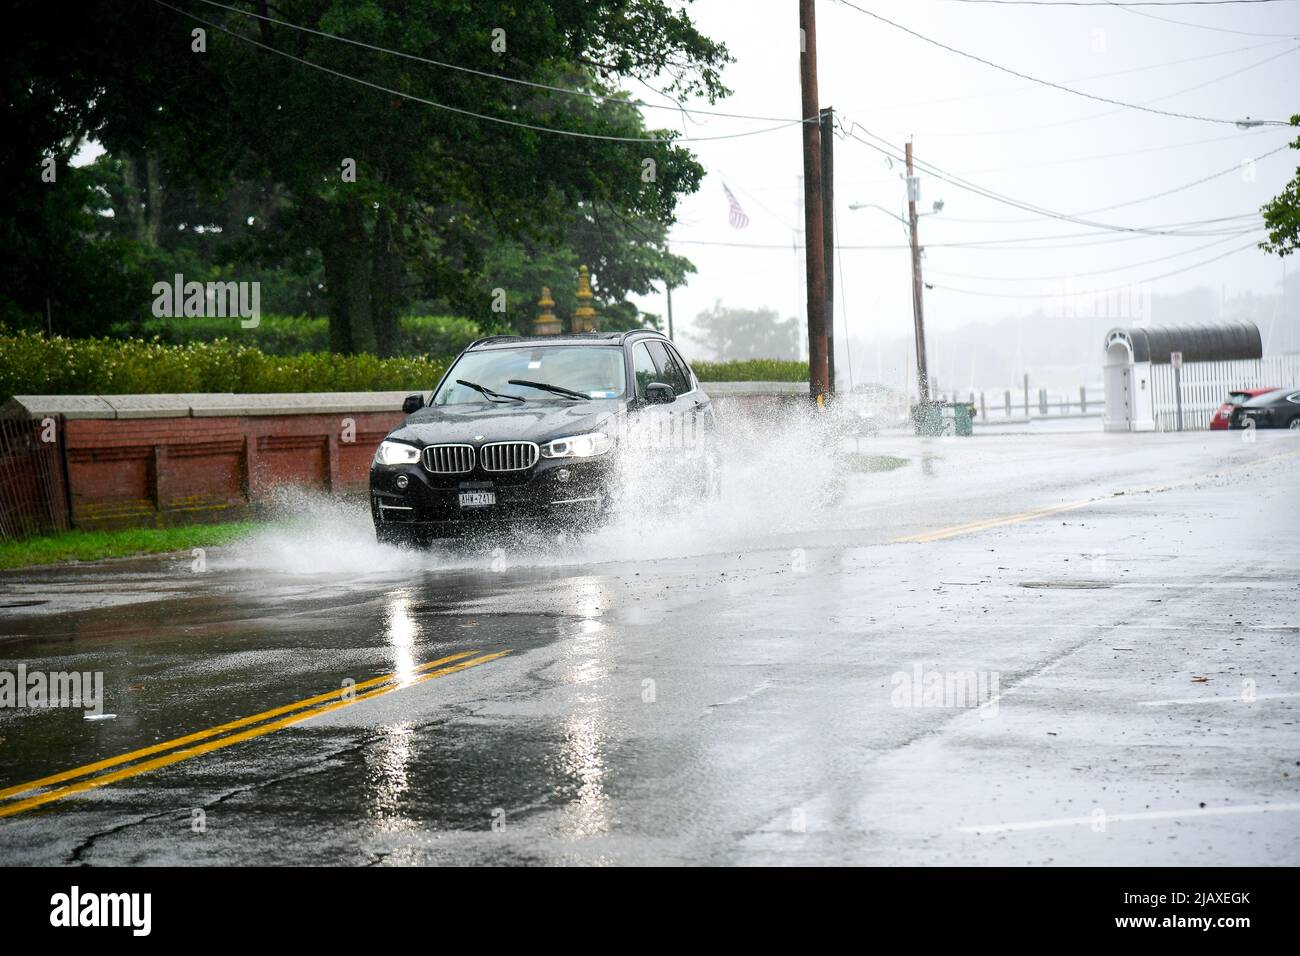 Stock-Fotos von Tropical Storm Elsa aus dem Jahr 2021 Drenching Newport, Rhode Island. Autos fahren durch Hochwasser am Eingang zur Insel Aquidneck. Stockfoto